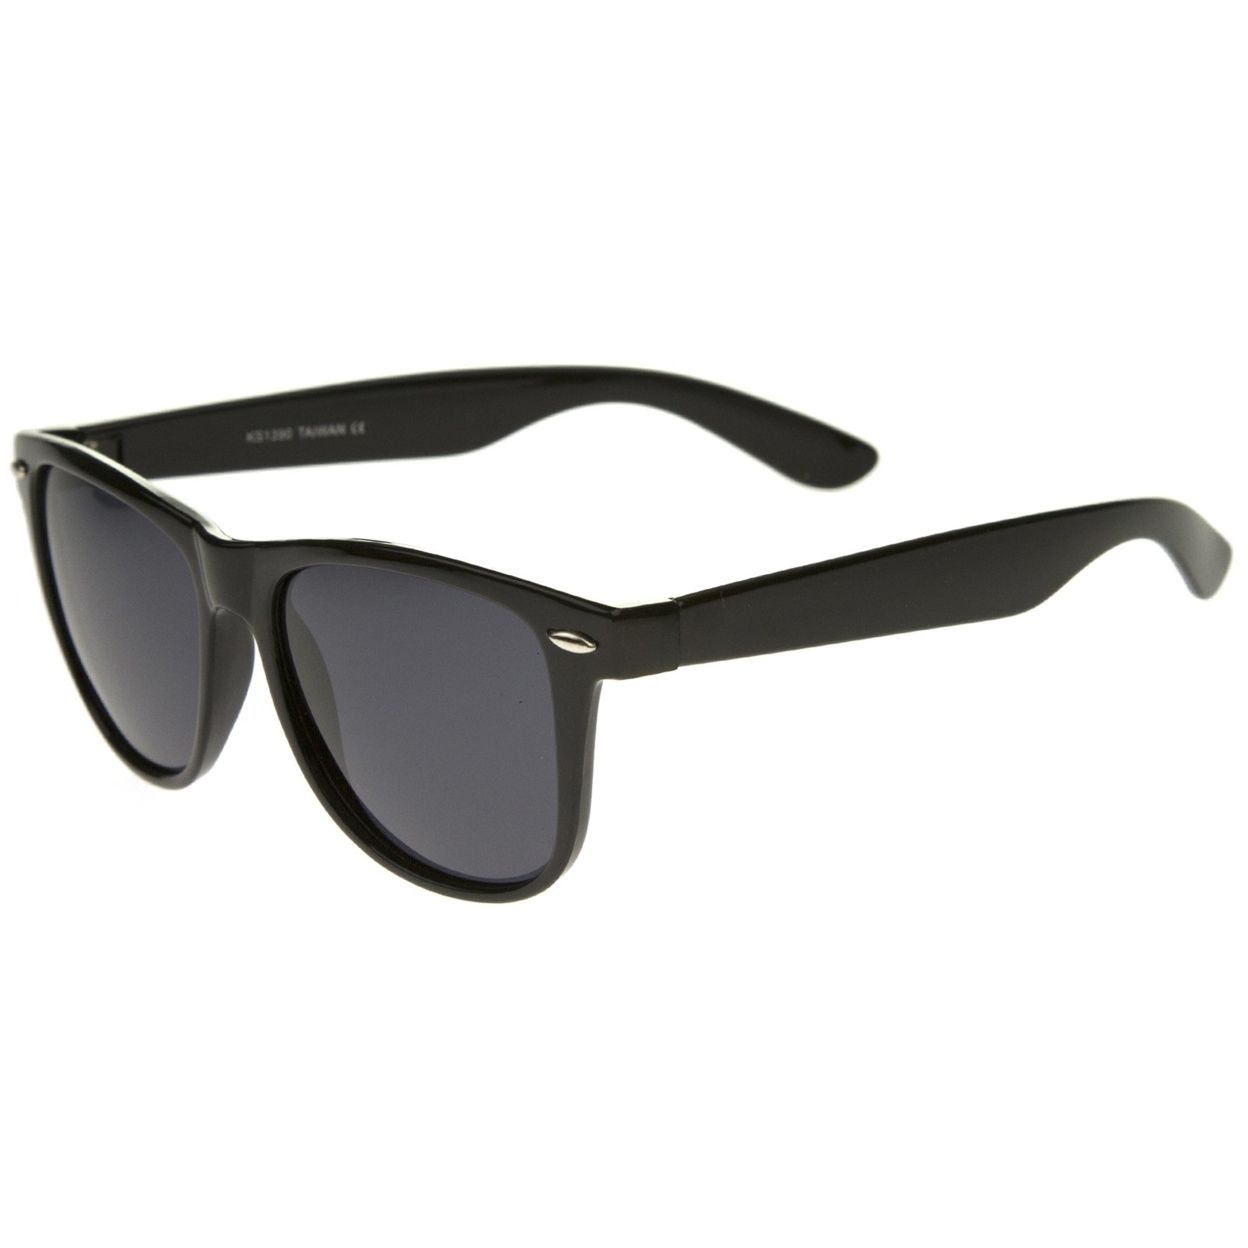 Large Oversize Classic Dark Tinted Lens Horn Rimmed Sunglasses 55mm - Tortoise / Smoke